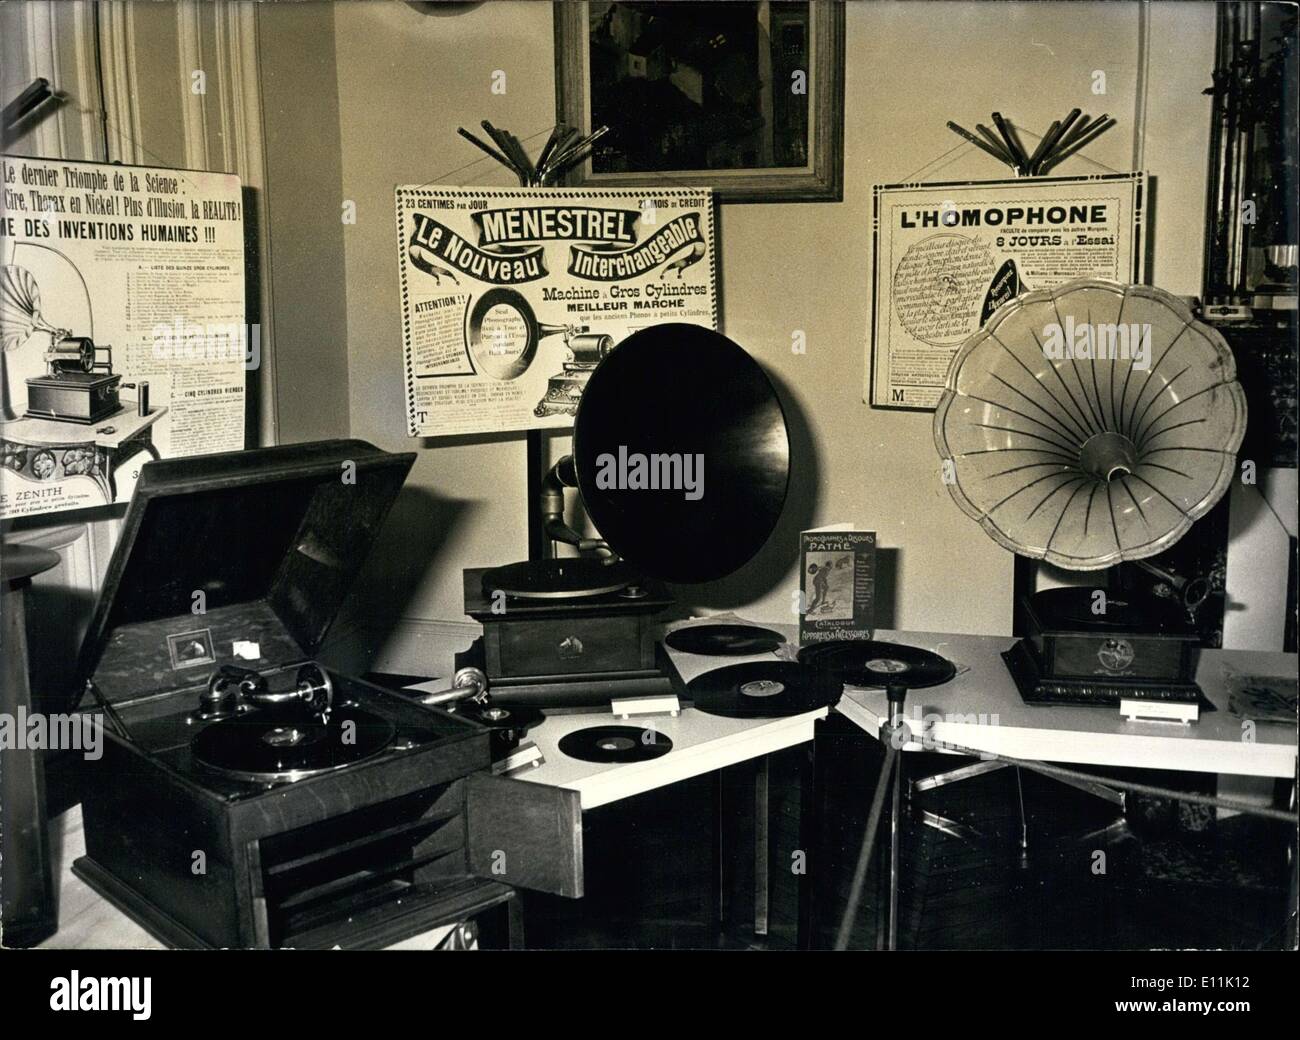 11. Mai 1978 - wird eine wunderbare Sammlung von Phonographen derzeit in einem Flügel des Rathauses im 21. Arrondissement in Paris vorgestellt. Homophone, Zonophones und andere Maschinen aus einer anderen Zeit sind in dieser Ausstellung präsentiert, die einen großen Erfolg mit Sammlern und Liebhabern der '' HiFi '' Vorläufer gehabt hat. Stockfoto